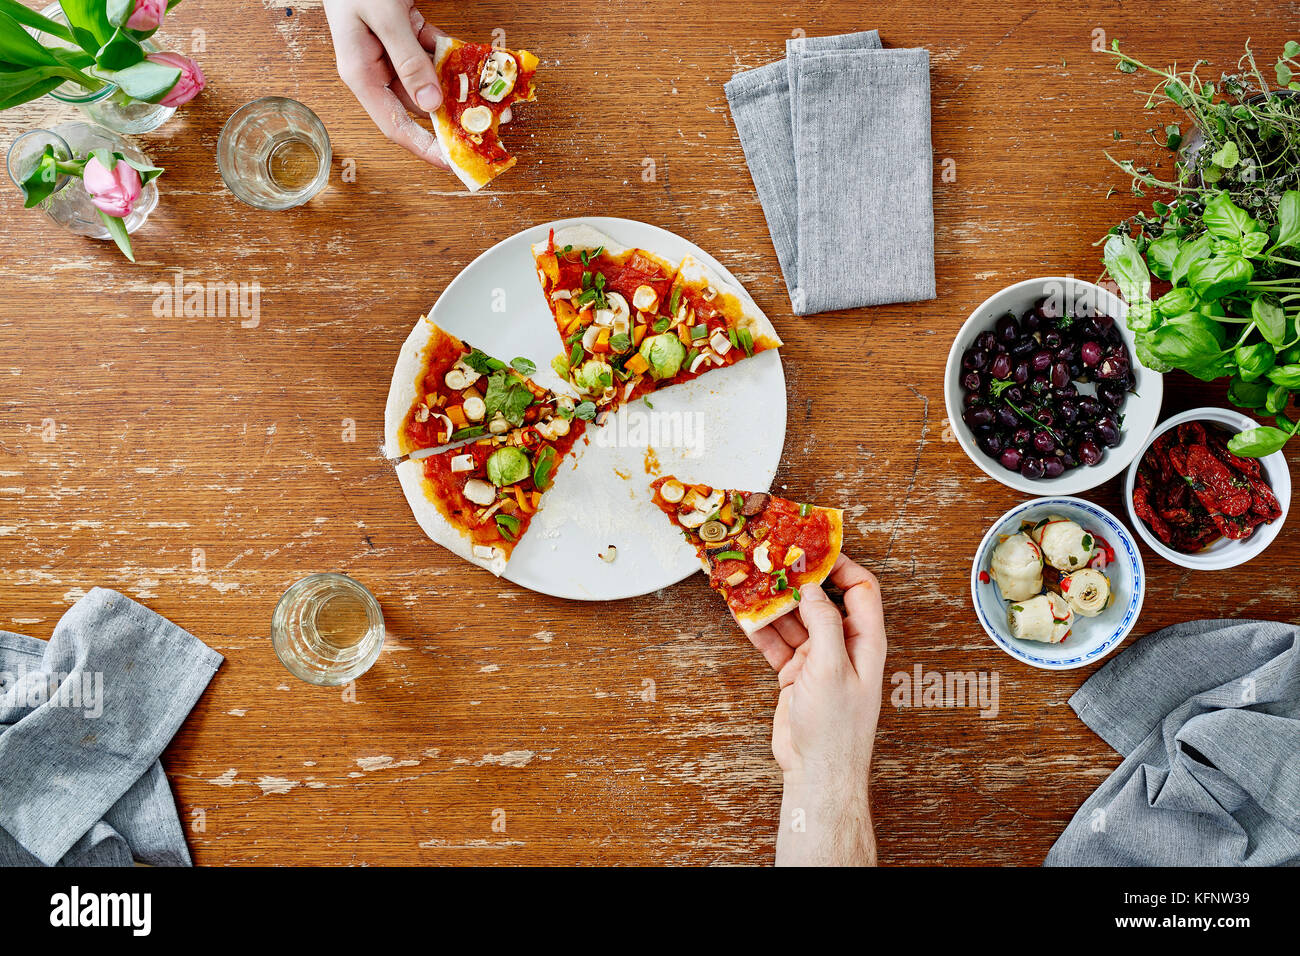 Riunione sociale mangiare e condividere pizza organico Foto Stock